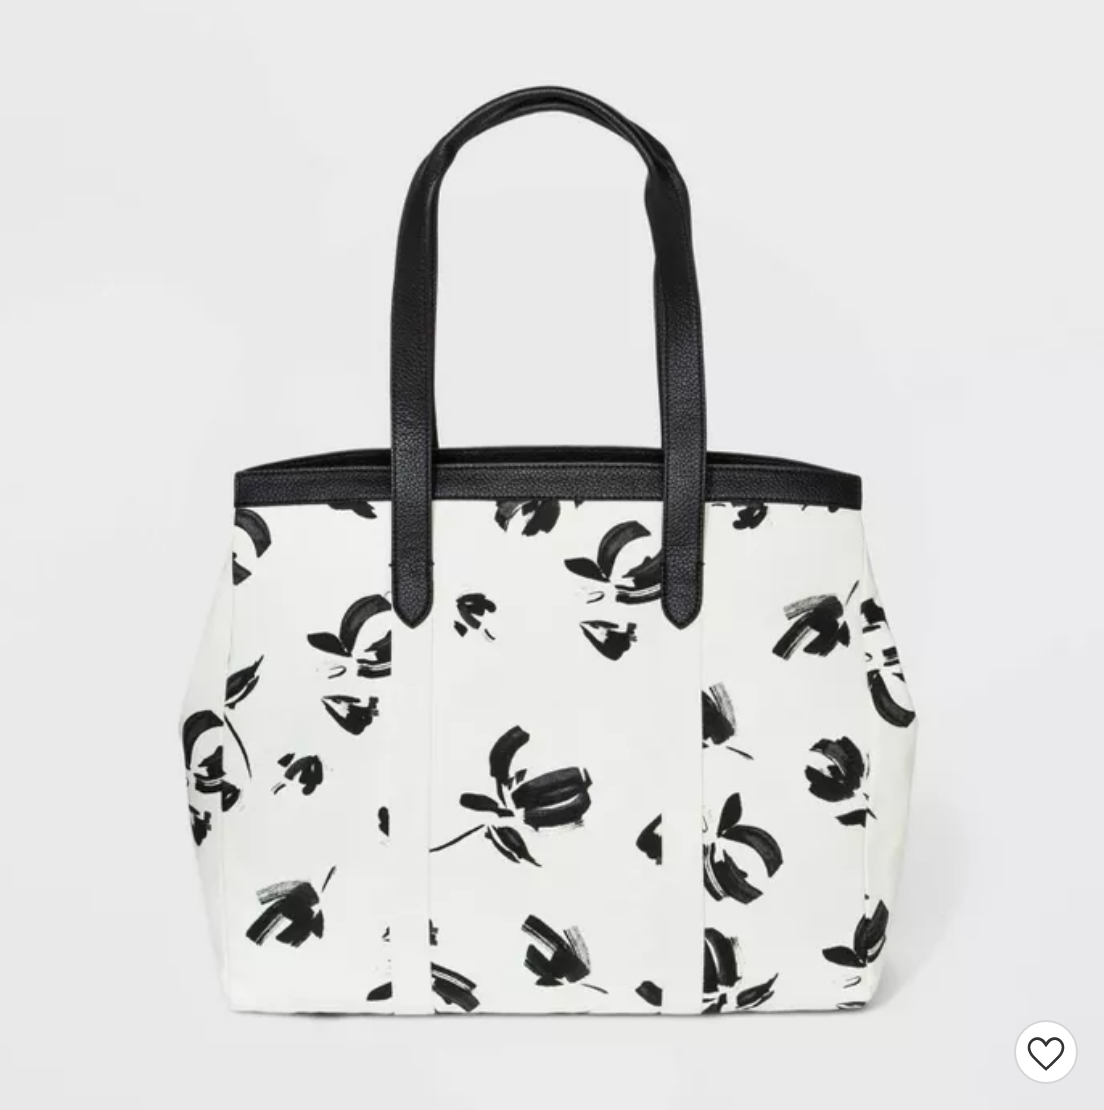 Zip Closure Tote Handbag - $29.99 from Target